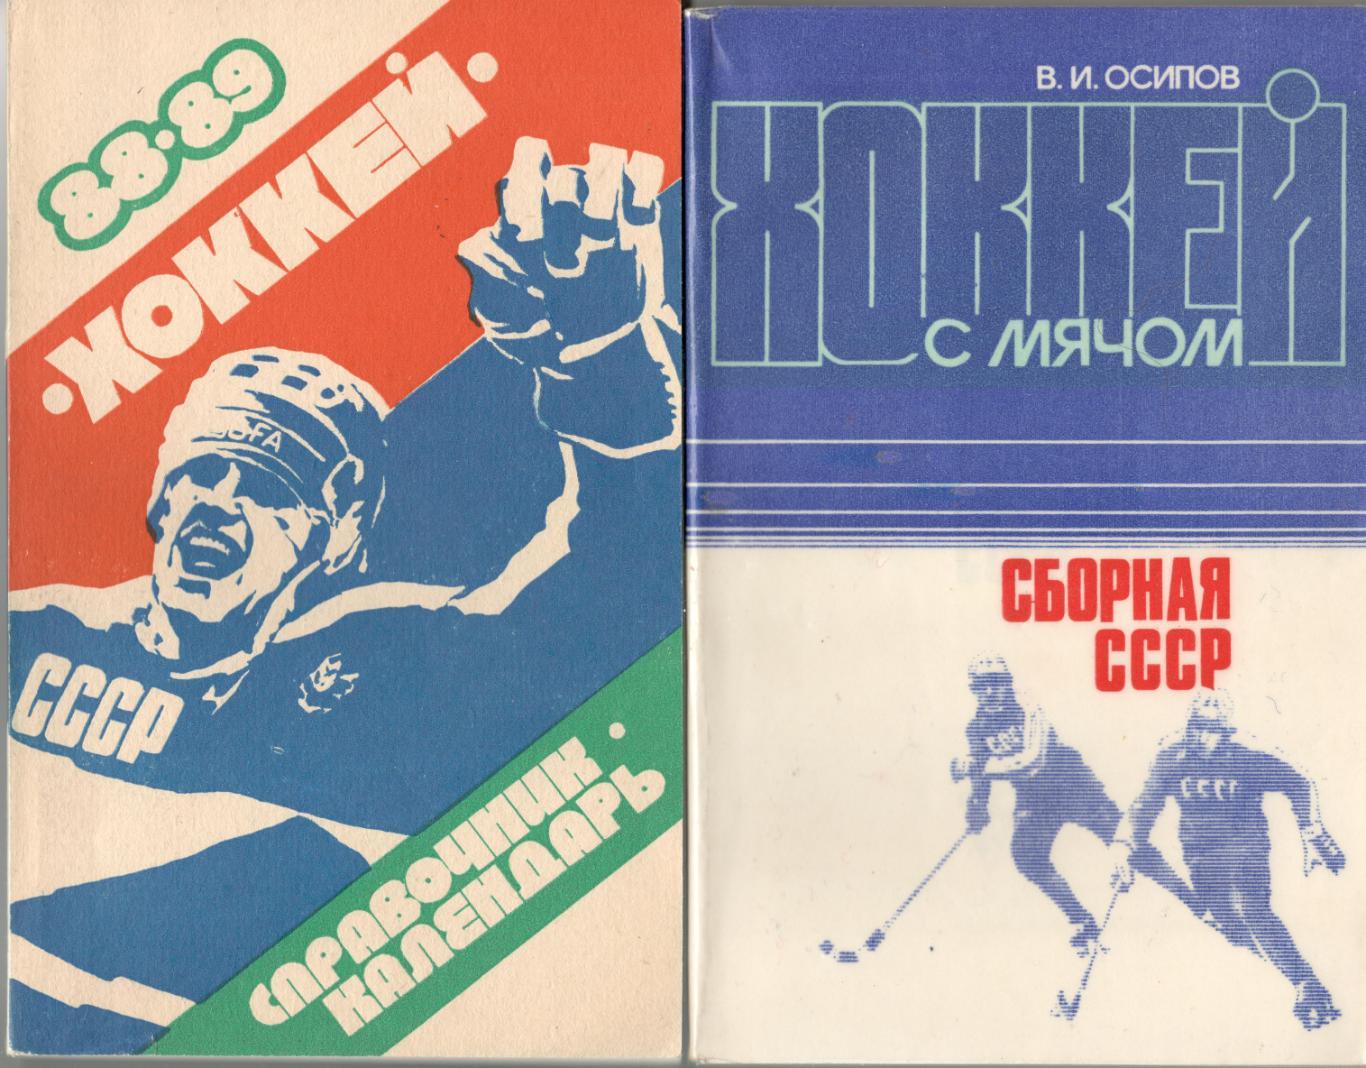 В.И. Осипов Хоккей с мячом Сборная СССР